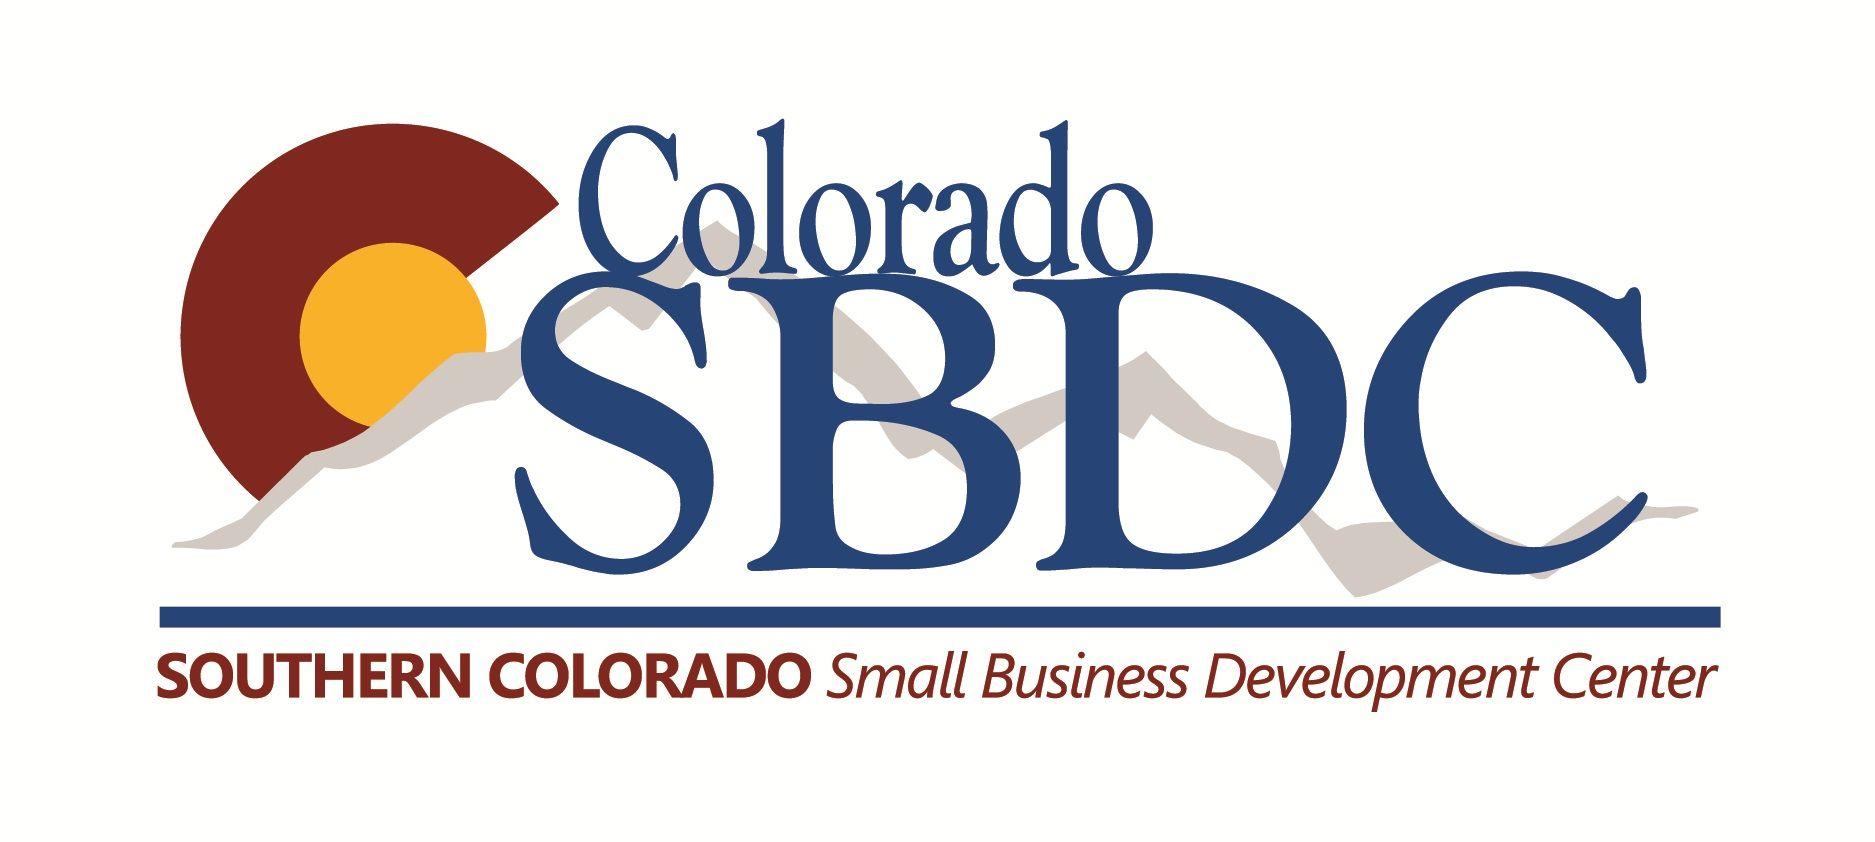 Colorado Corporate Logo - Pueblo Community College